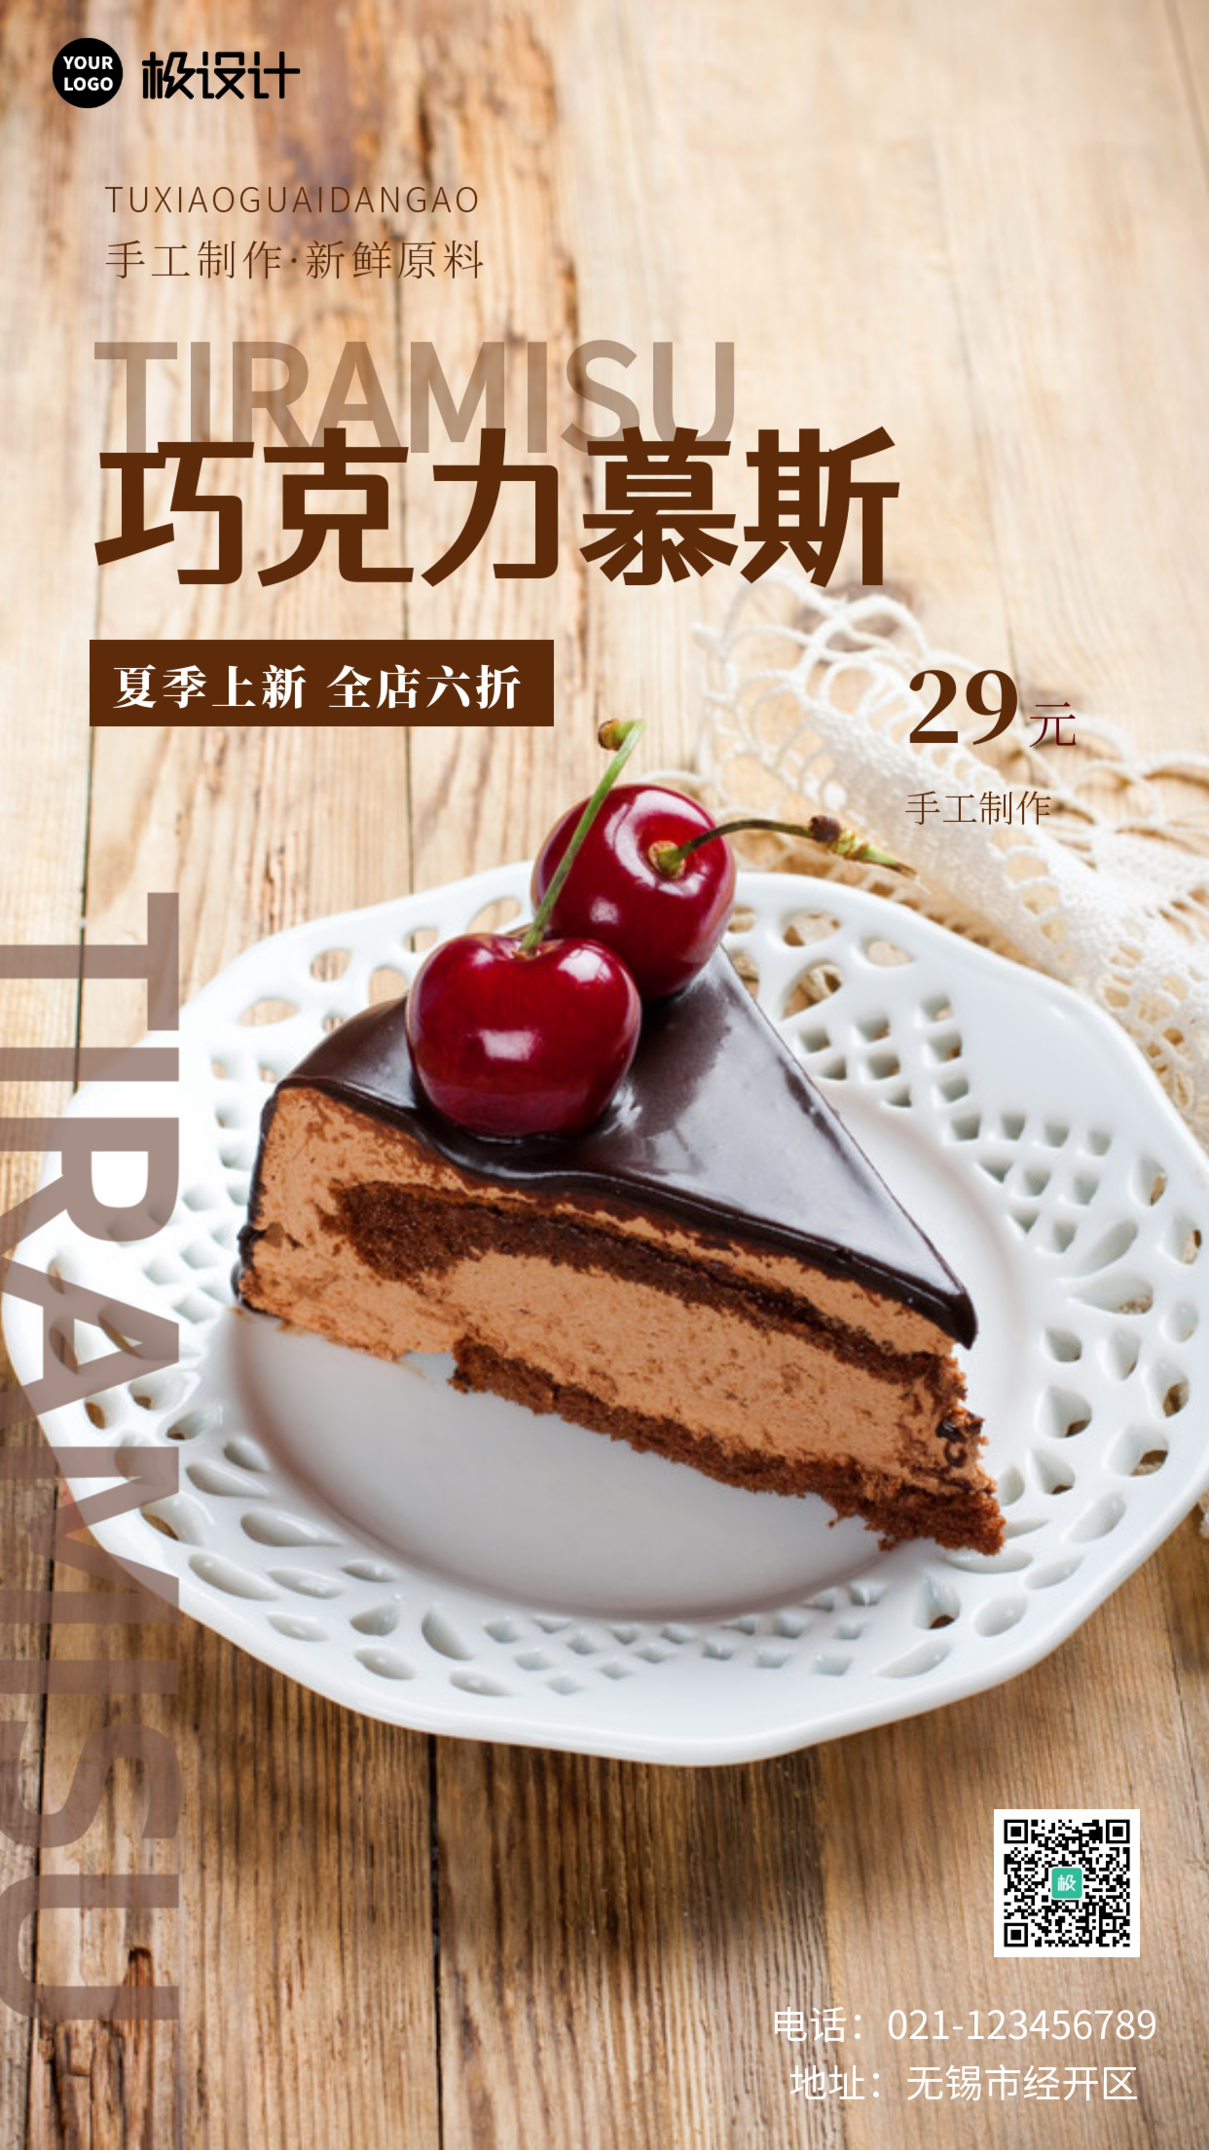 巧克力慕斯高雅美食甜品蛋糕促销手机海报